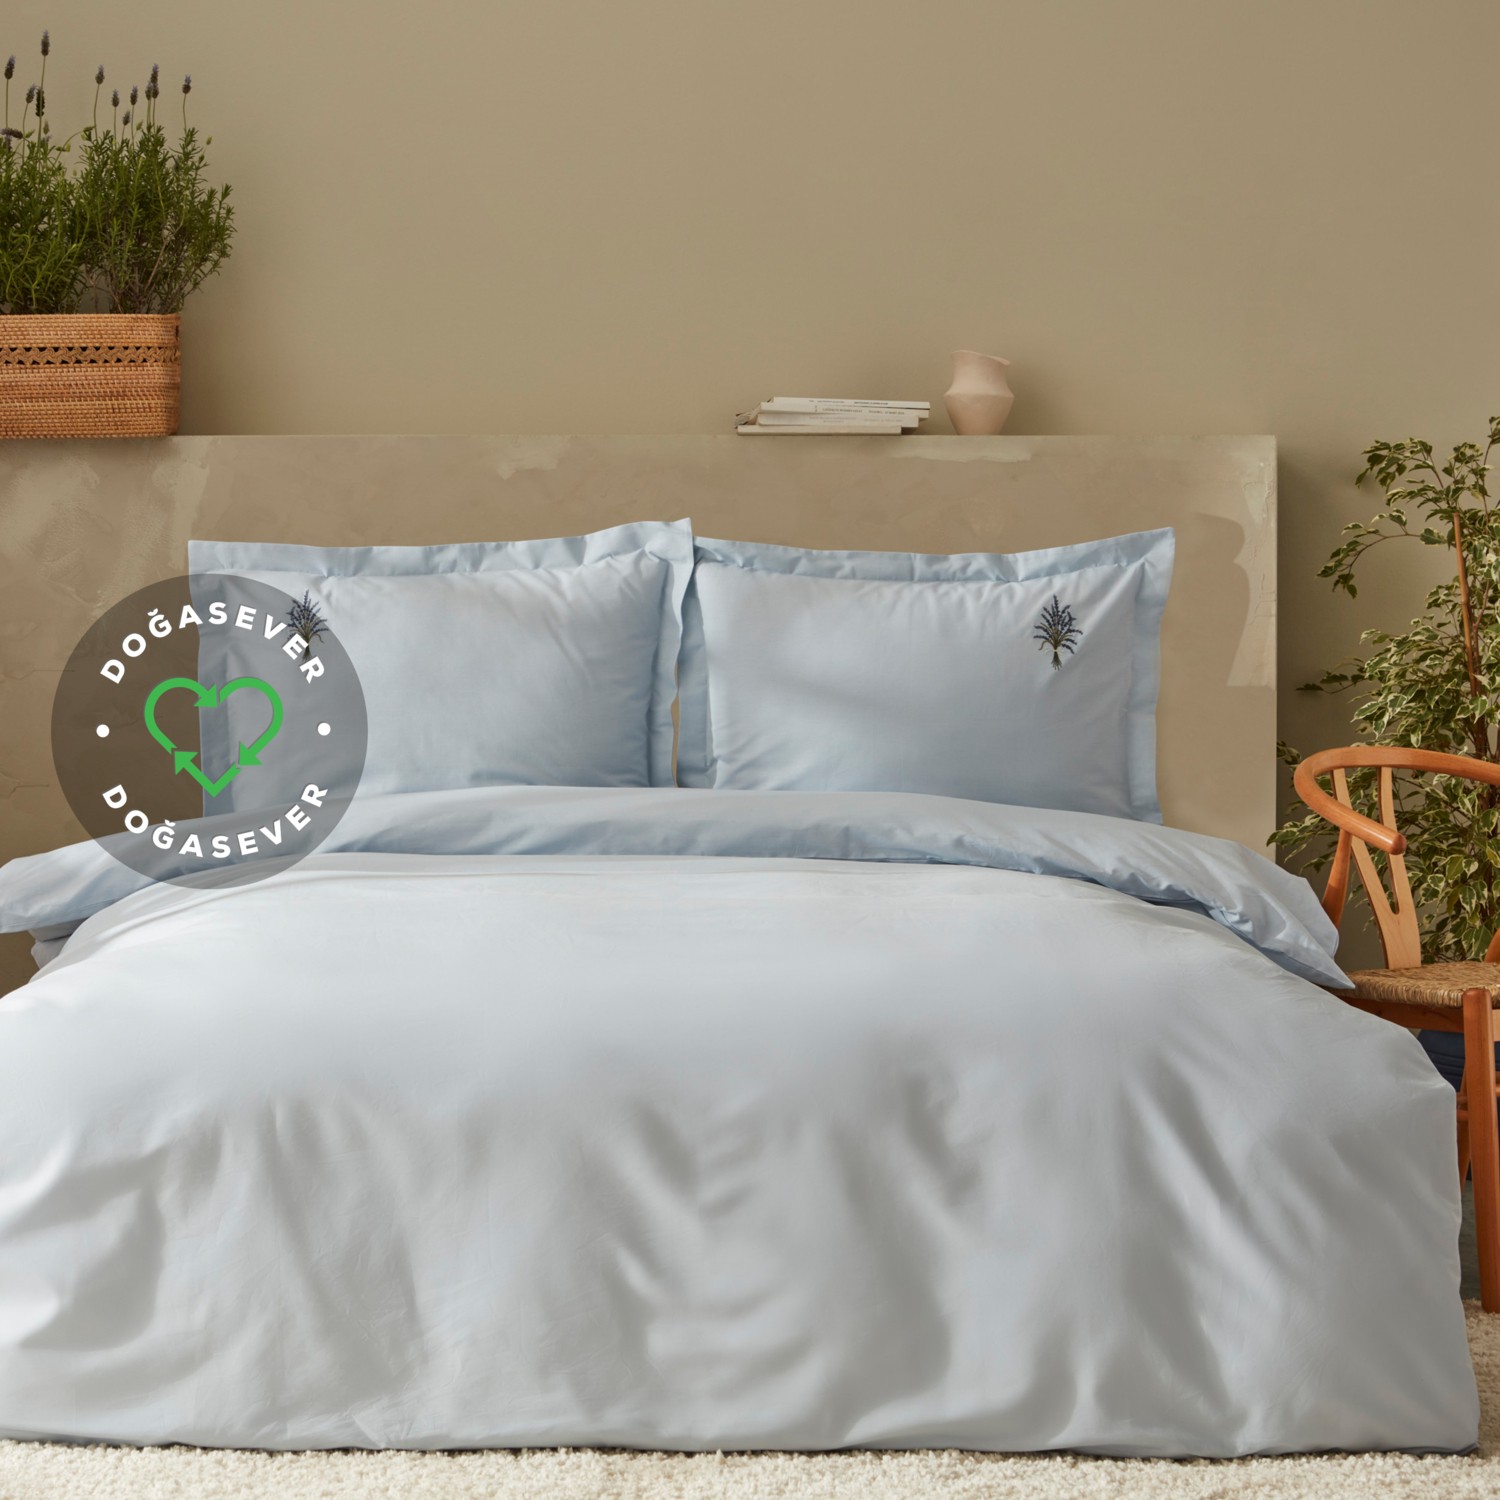 комплект постельного белья с вышивкой karaca home Комплект постельного белья Karaca Home Lavender Vegan, сиреневый